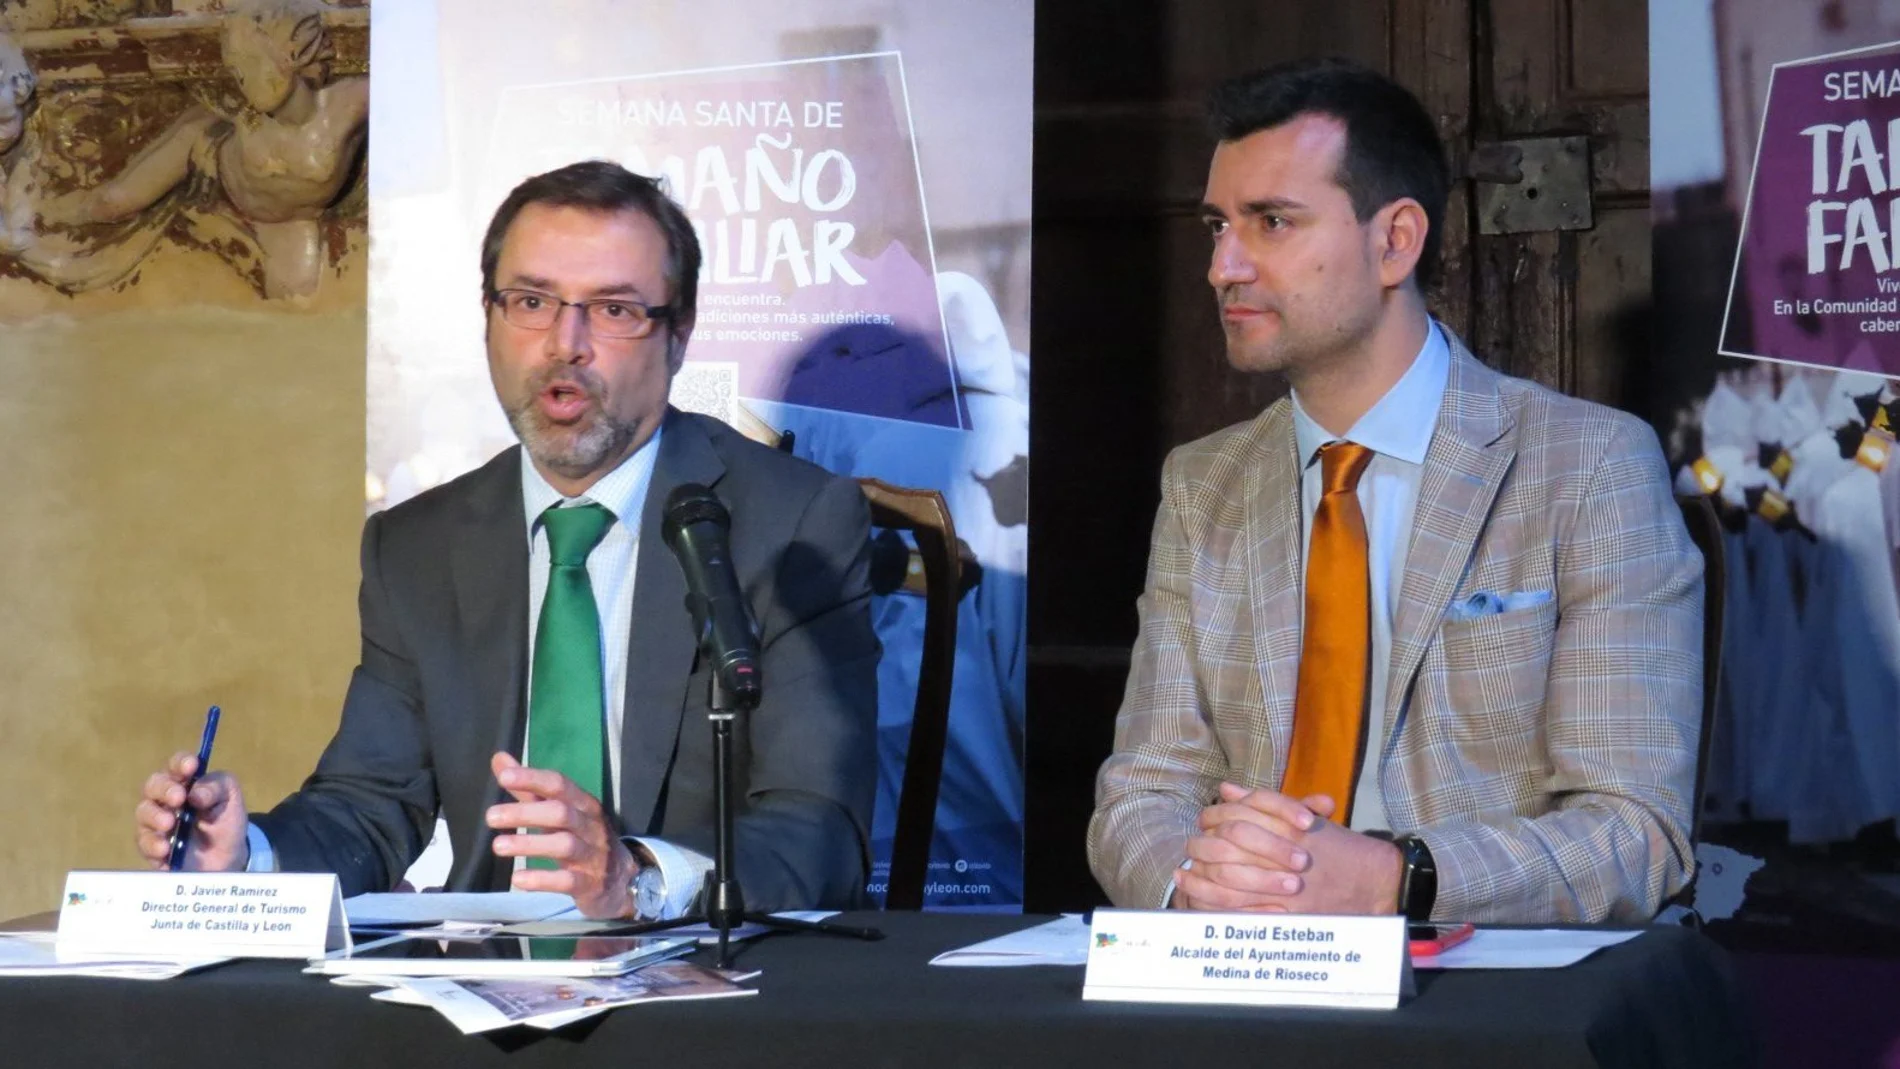 El director general de Turismo, Javier Ramírez, presenta la iniciativa junto al alcalde de Medina de Rioseco, David Esteban